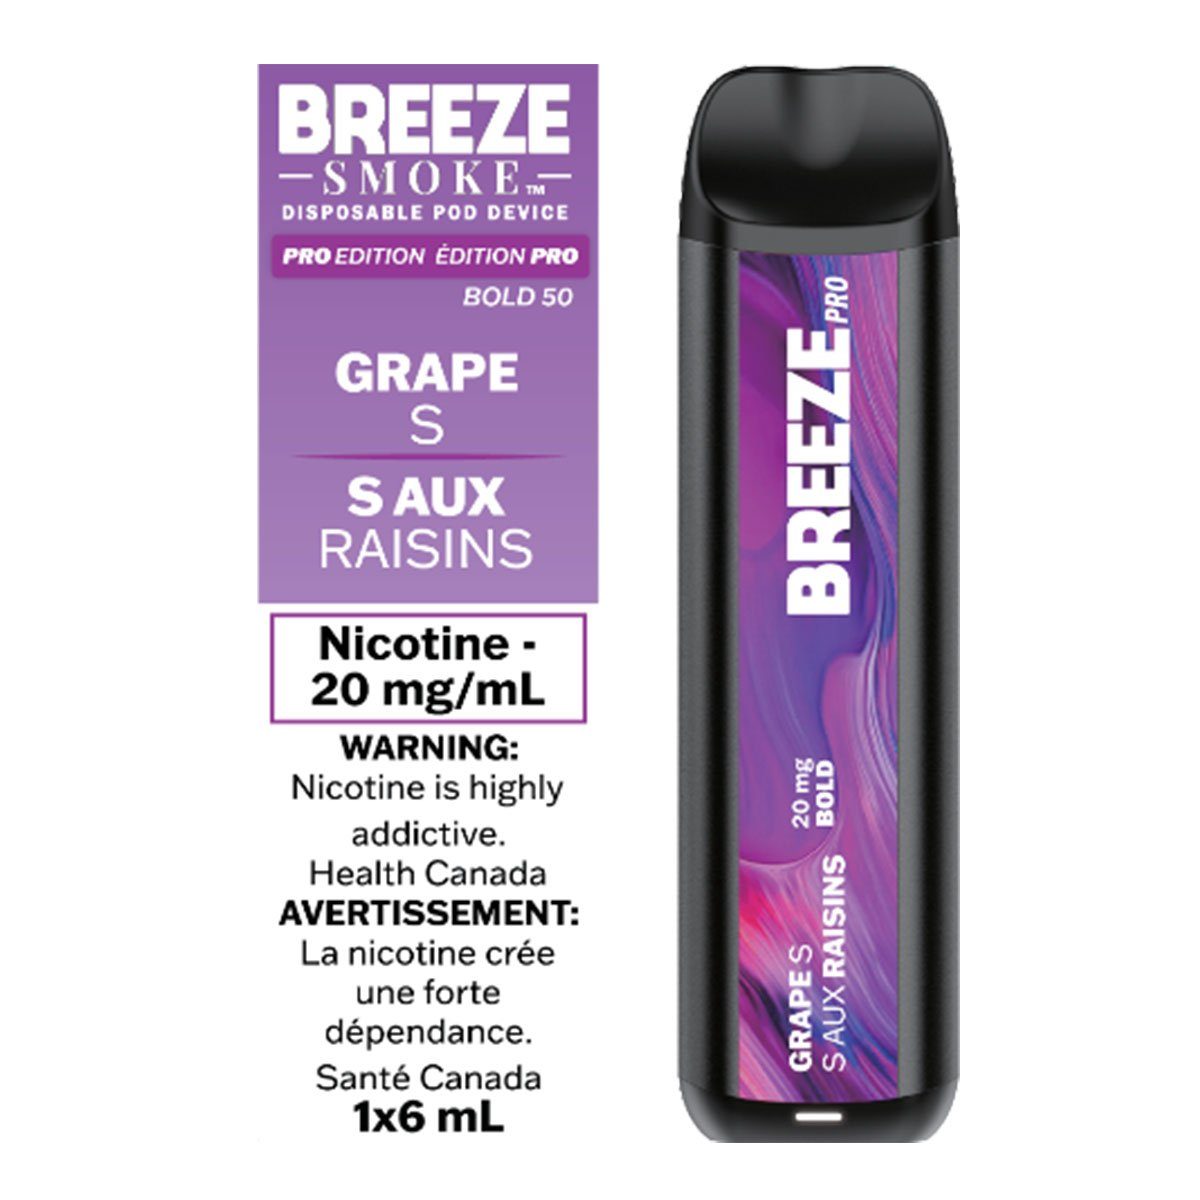 Grape S - BP Disposable Breeze Pro 